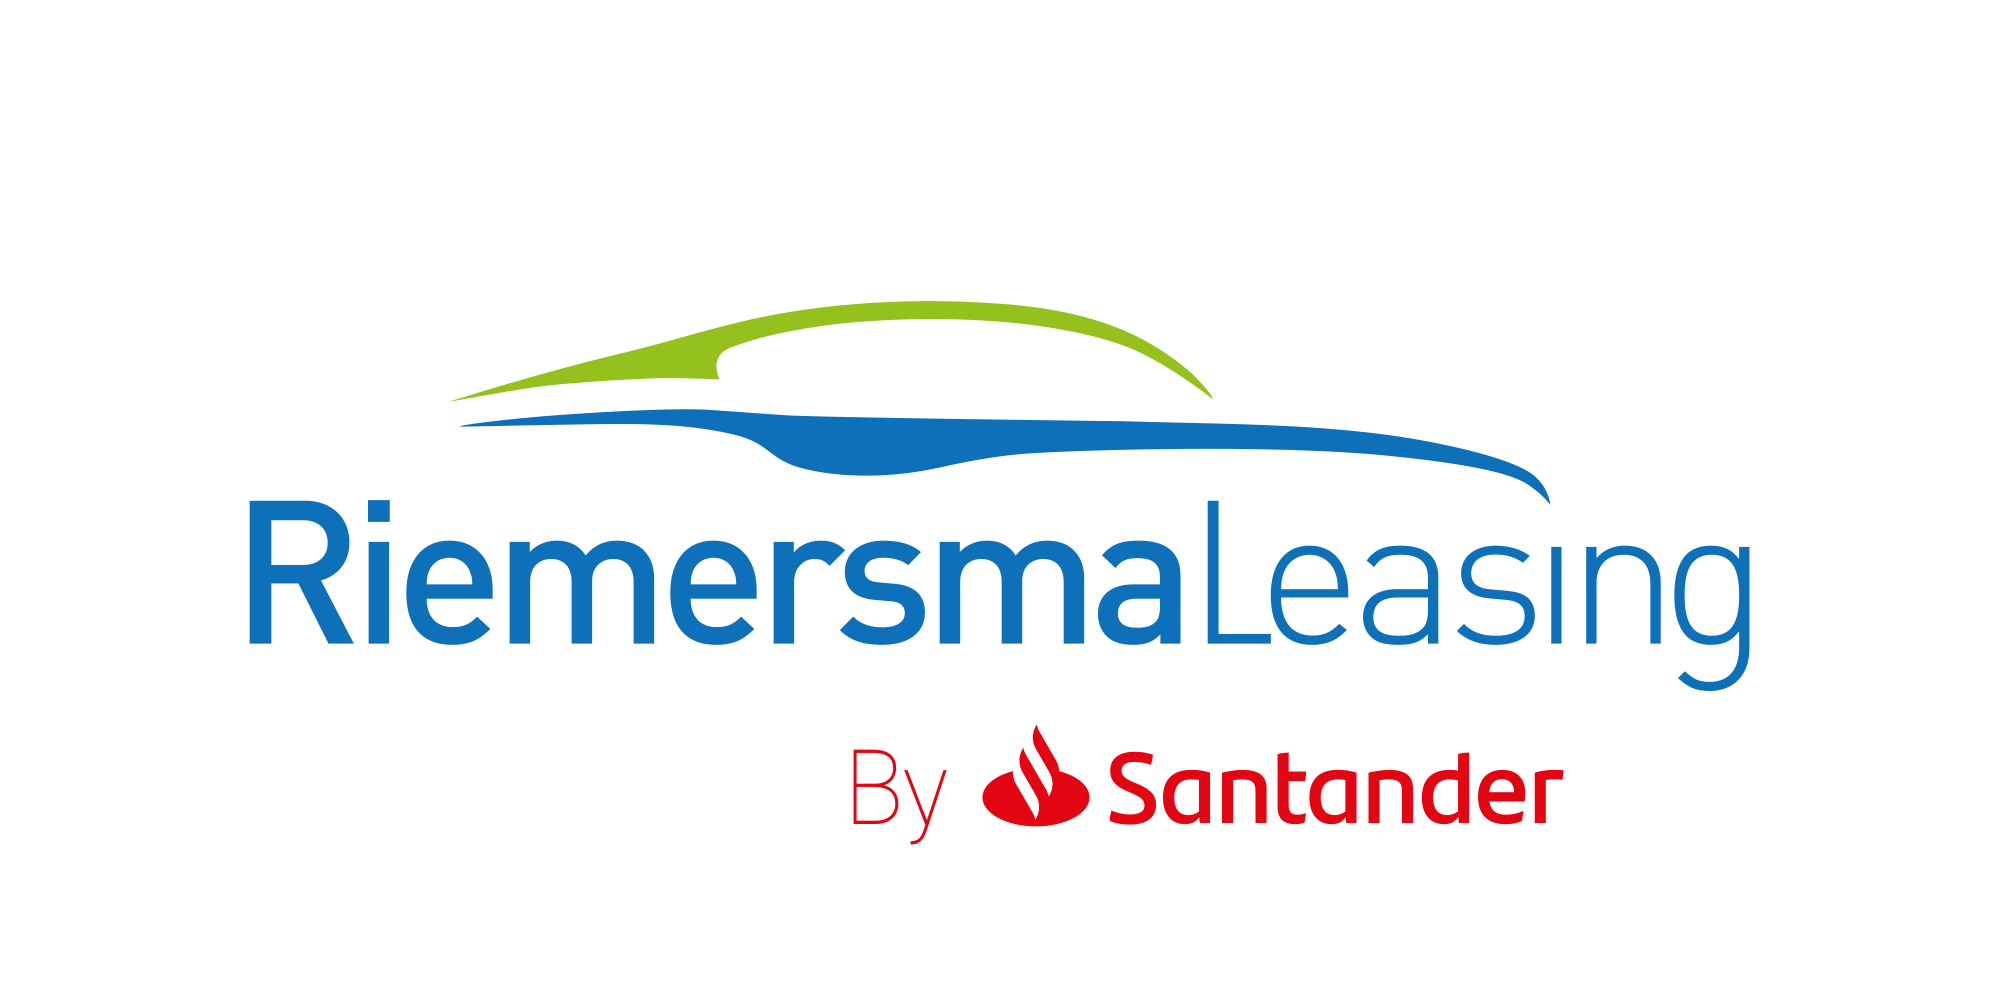 Riemersma Leasing by Santander